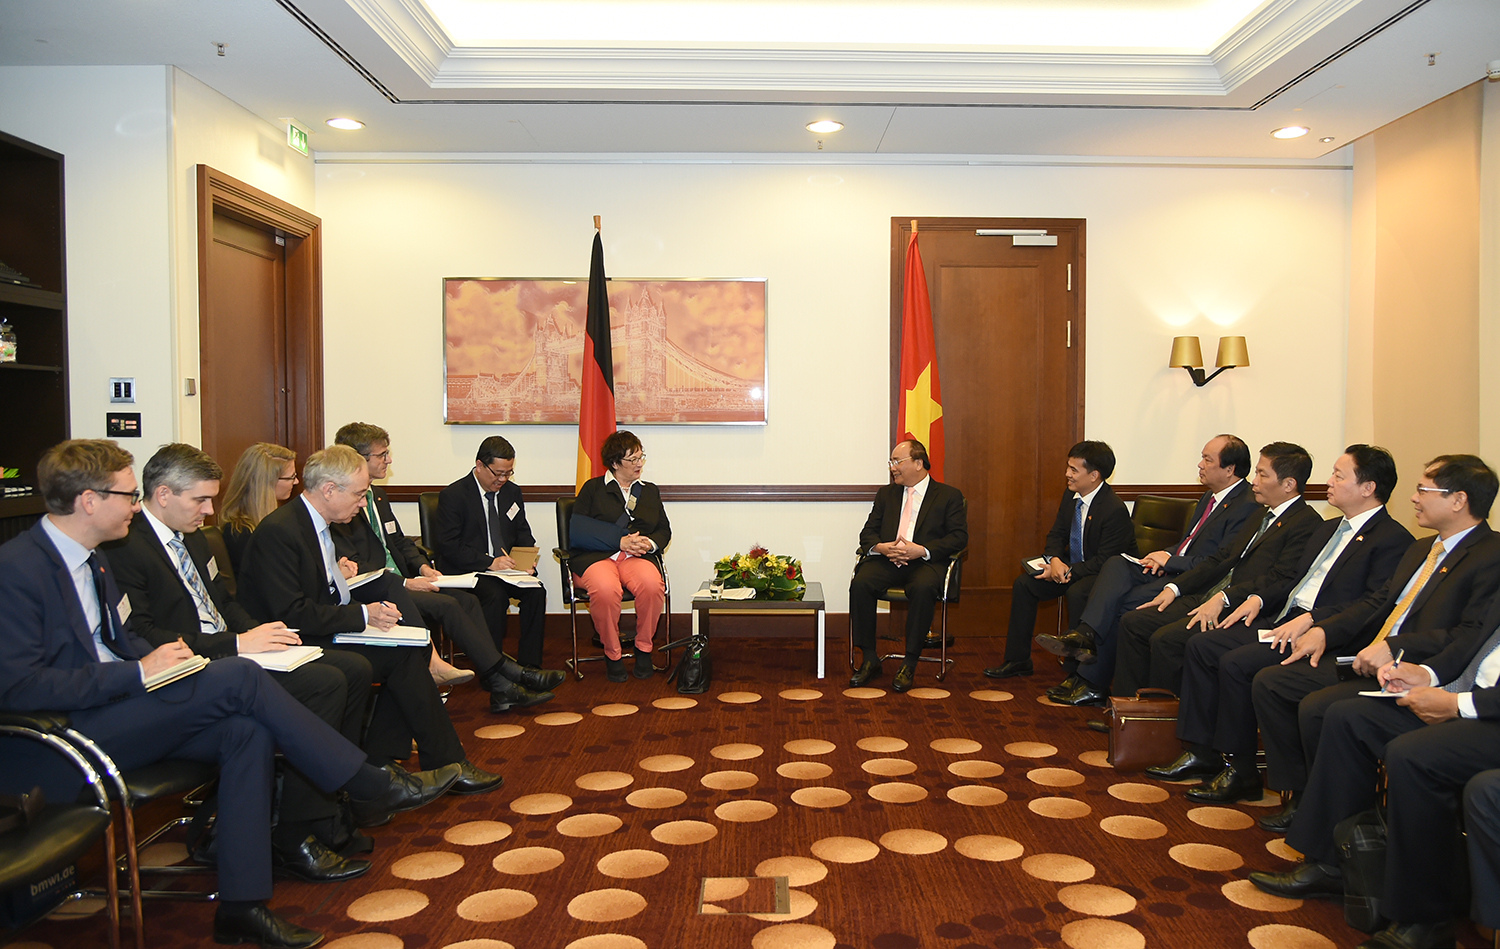 Thủ tướng Nguyễn Xuân Phúc  và Bộ trưởng Brigitte Zypries trao đổi về các biện pháp tăng cường hợp tác thương mại, đầu tư giữa hai nước. Ảnh: VGP/Quang Hiếu